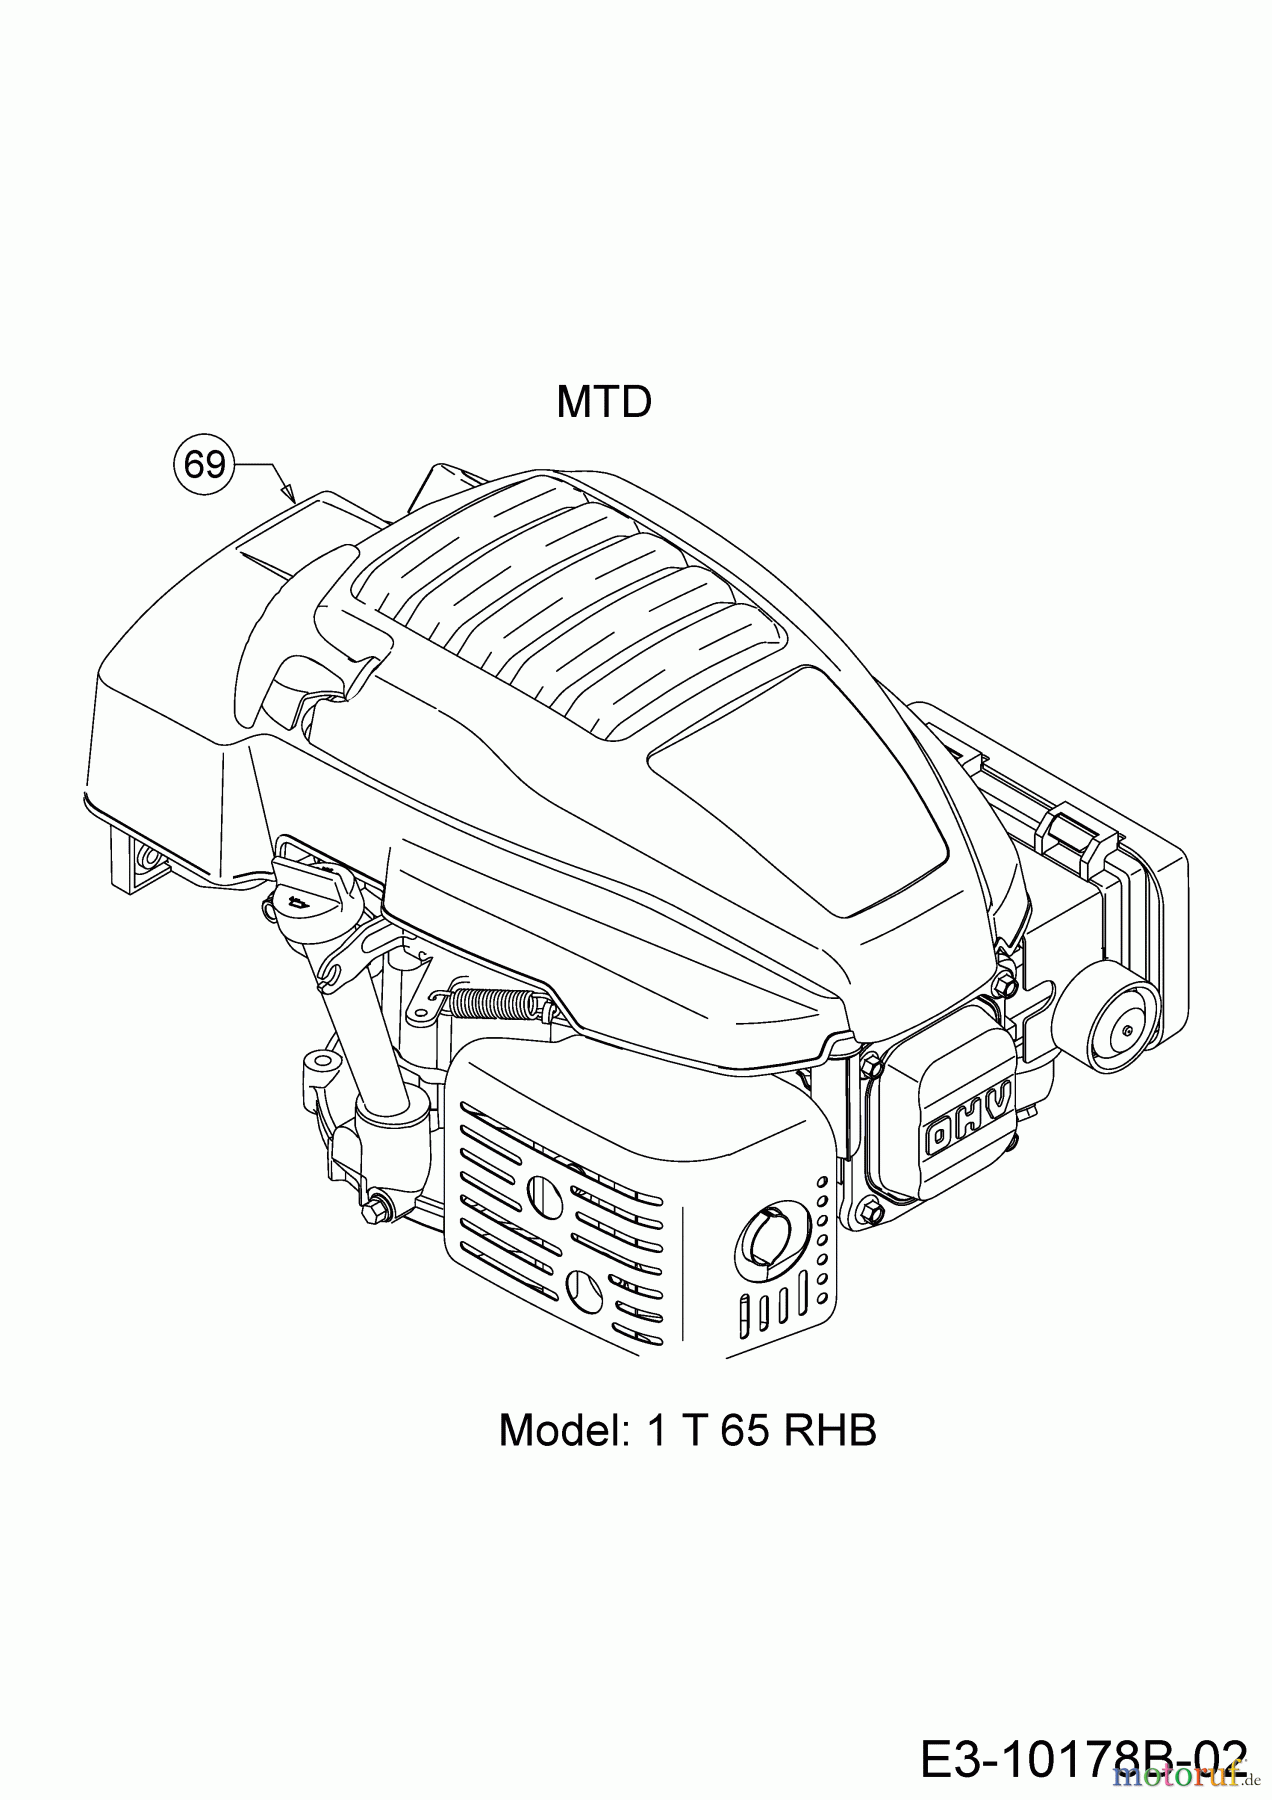  MTD Motormäher mit Antrieb DL 53 SP 12A-PAS4677  (2019) Motor MTD